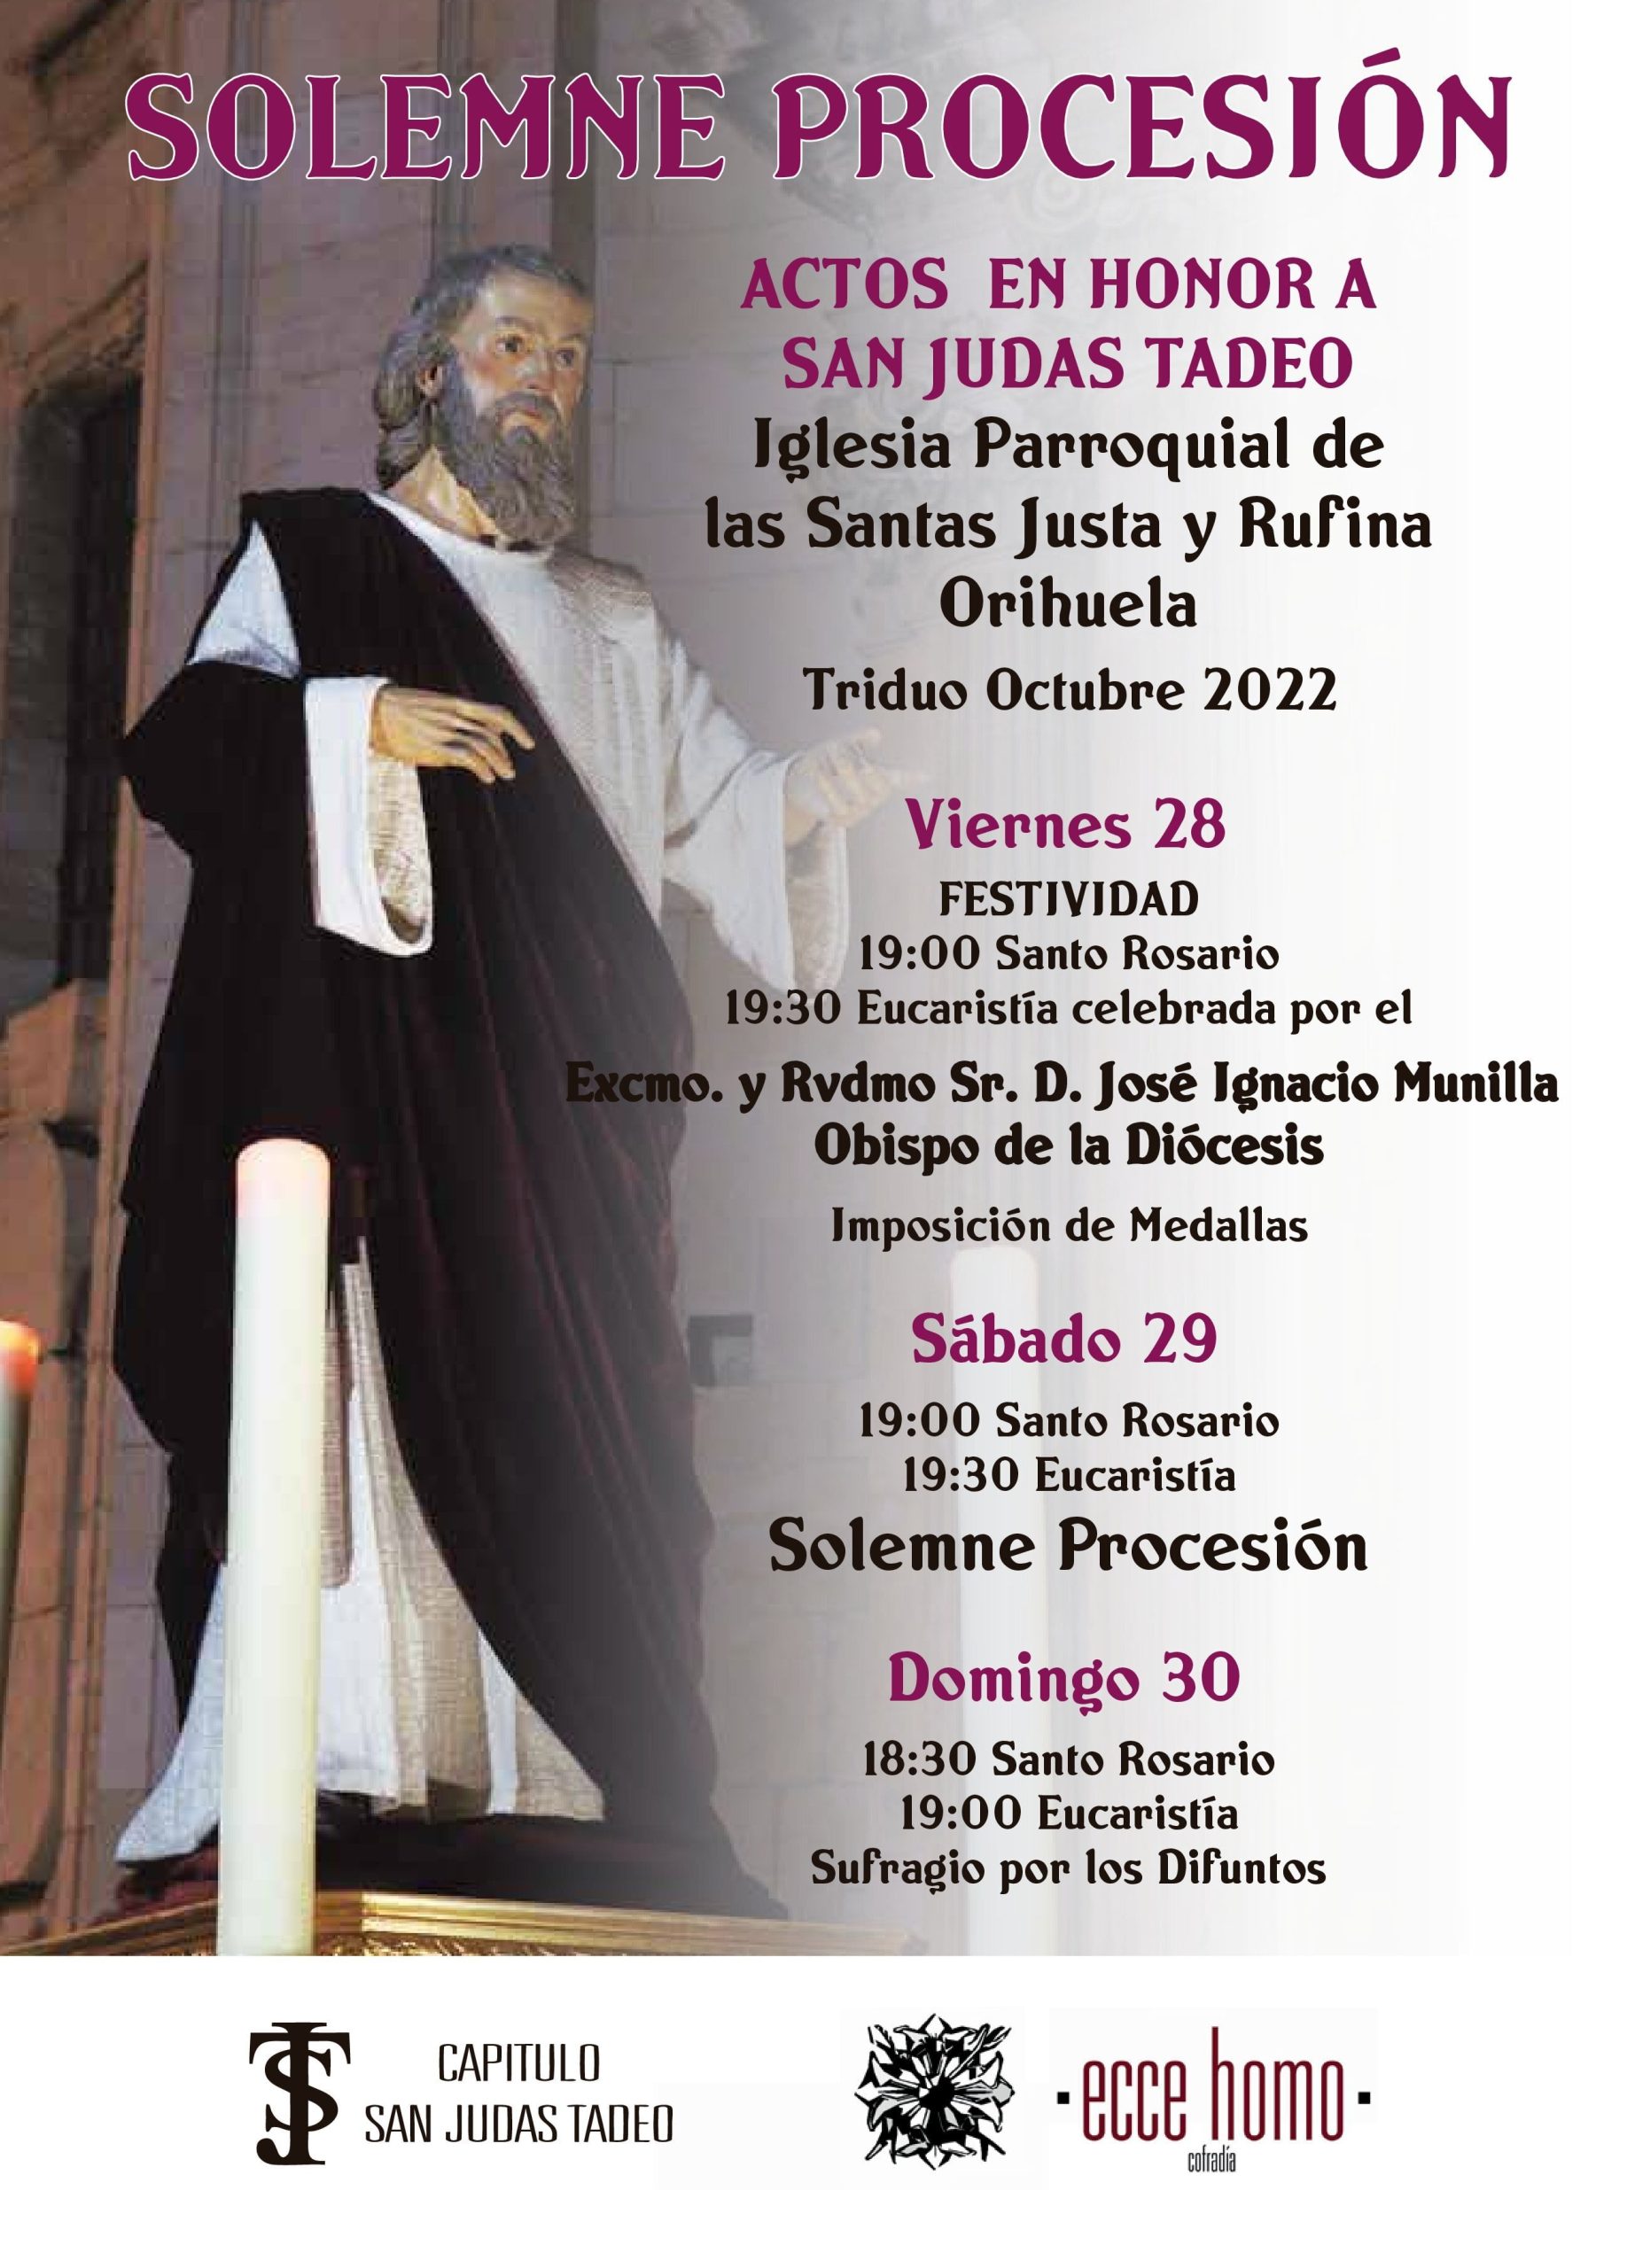 Orihuela, preparada para el Triduo y los actos en honor a San Judas Tadeo